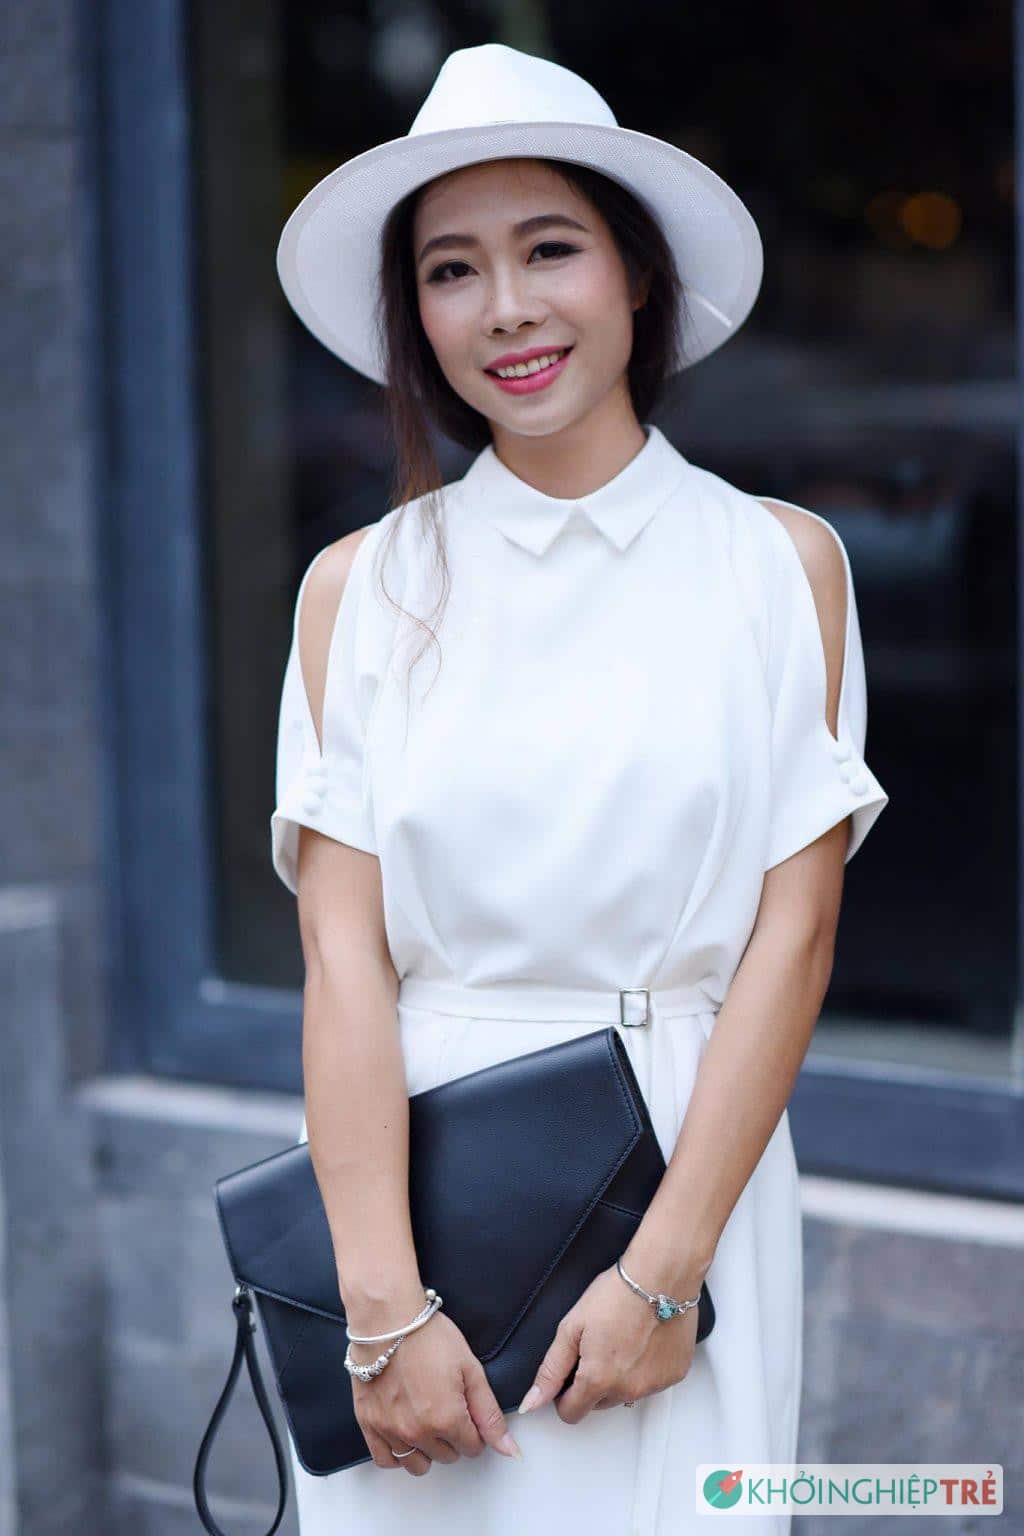 Khởi nghiệp vất vả, nữ quyền làng thời trang Việt có chỗ đứng?